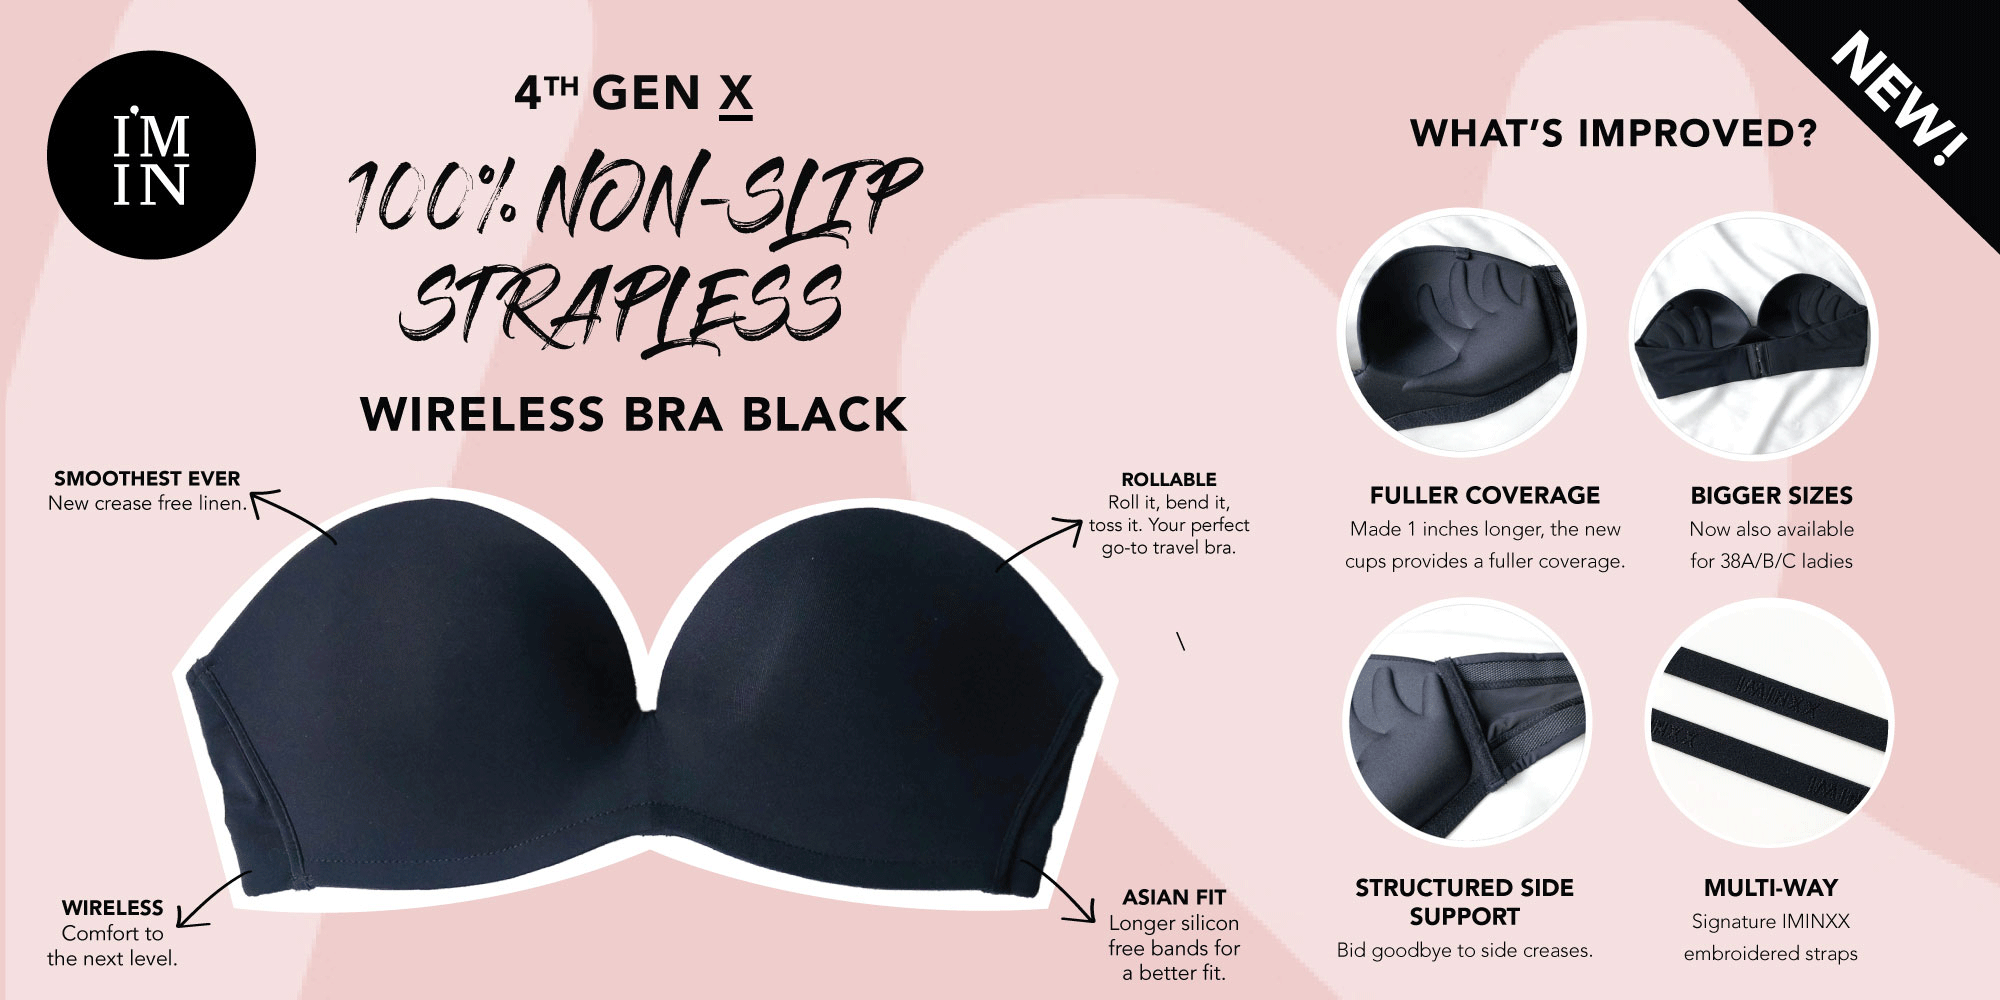 4th Gen X 100% Non-Slip Wireless Strapless Bra in Black